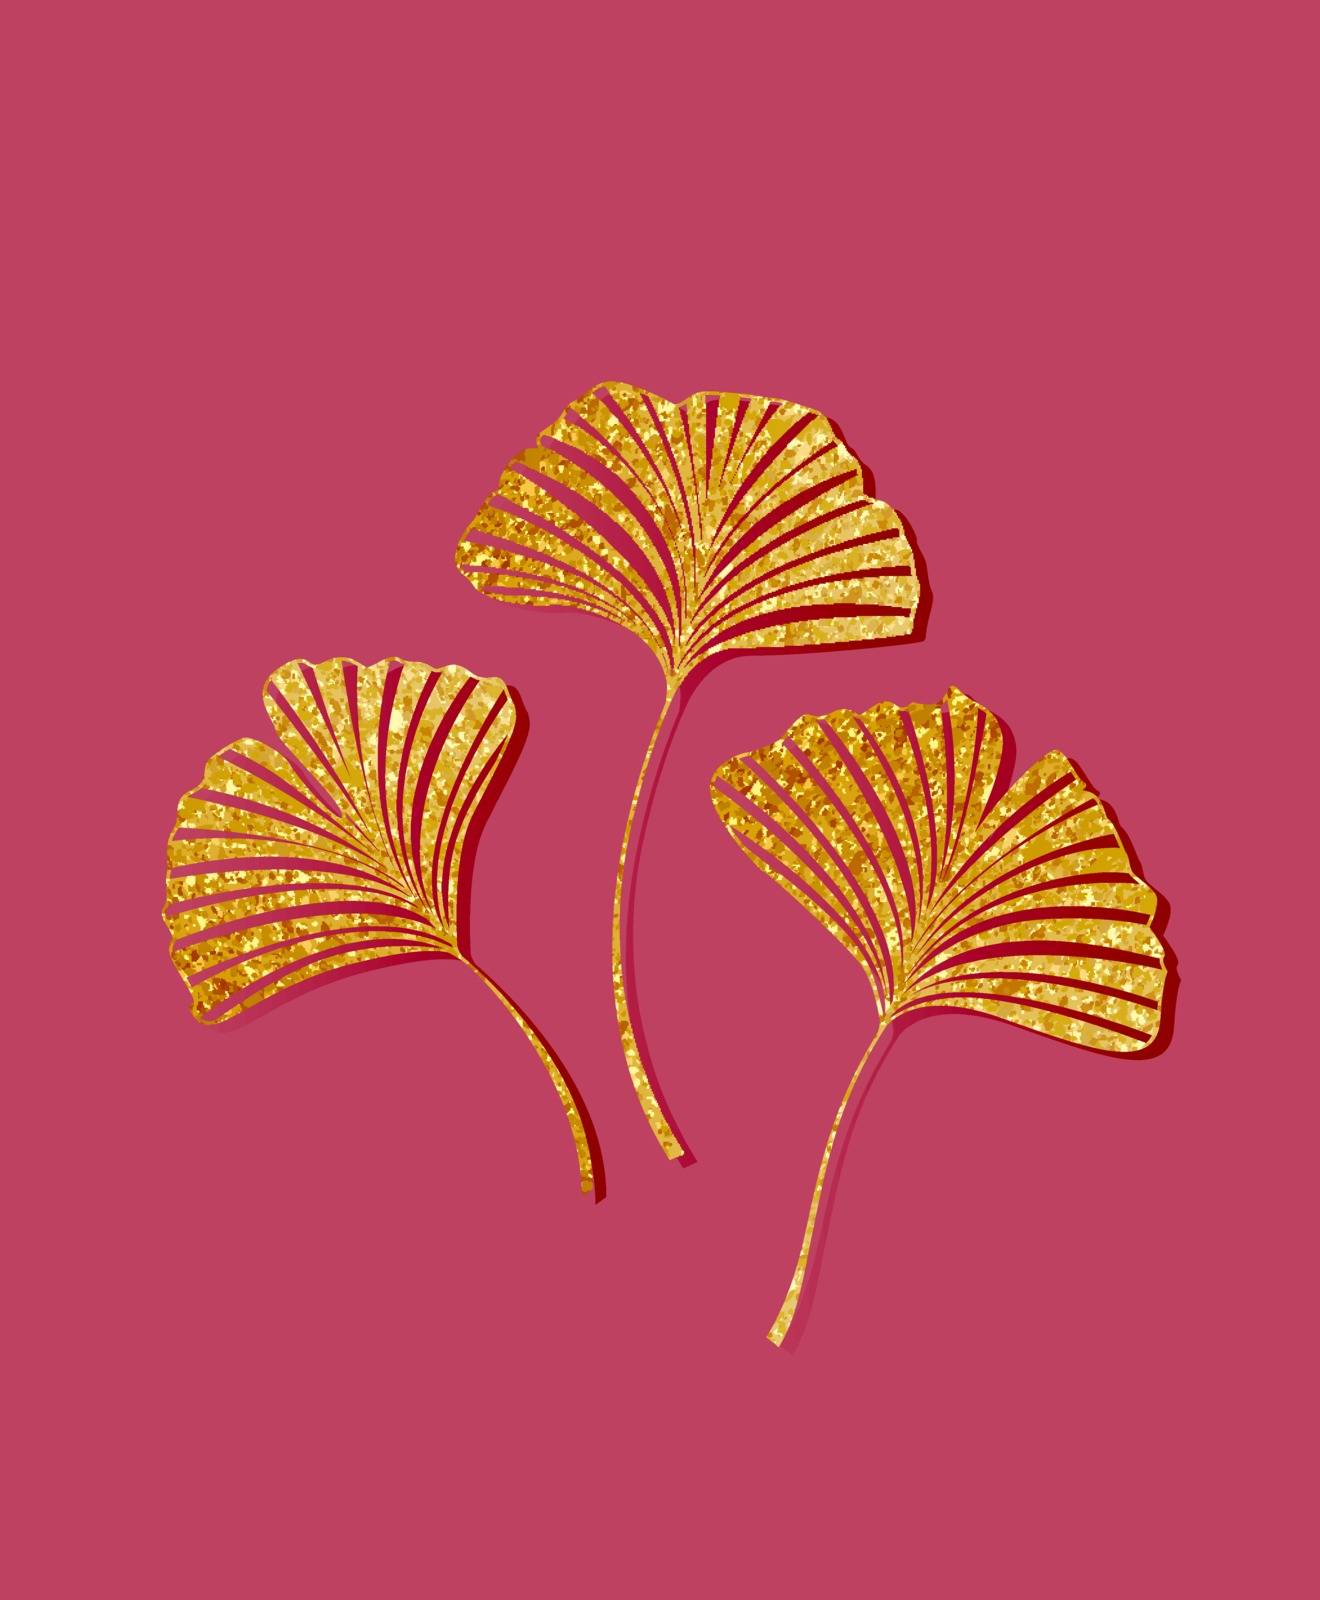 Ginkgo biloba leaves by odina222